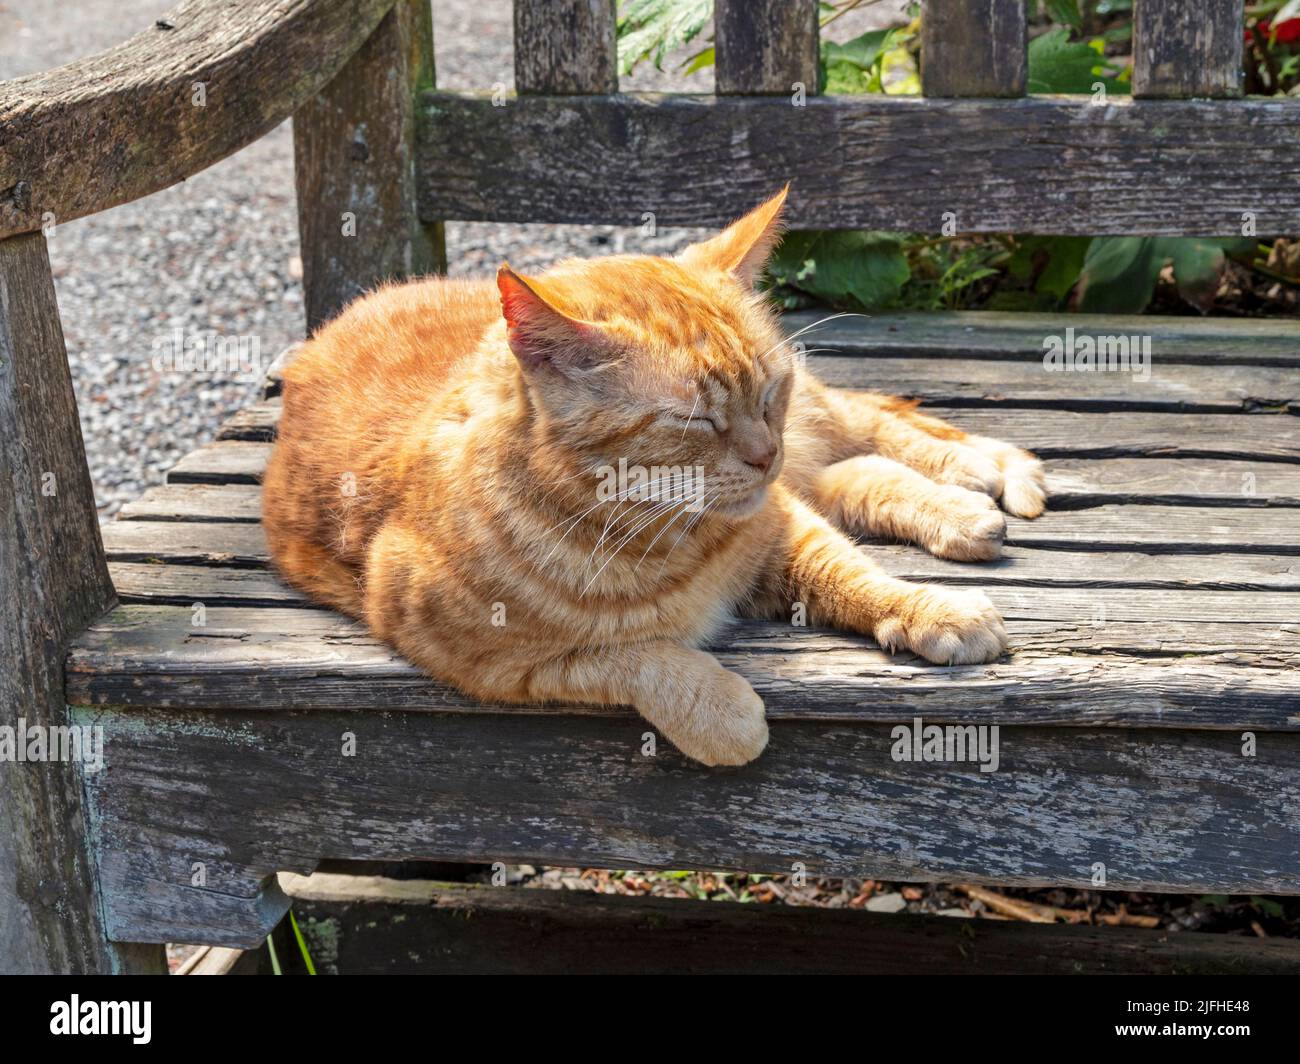 Ginger gato descansando en un banco de madera del parque Foto de stock